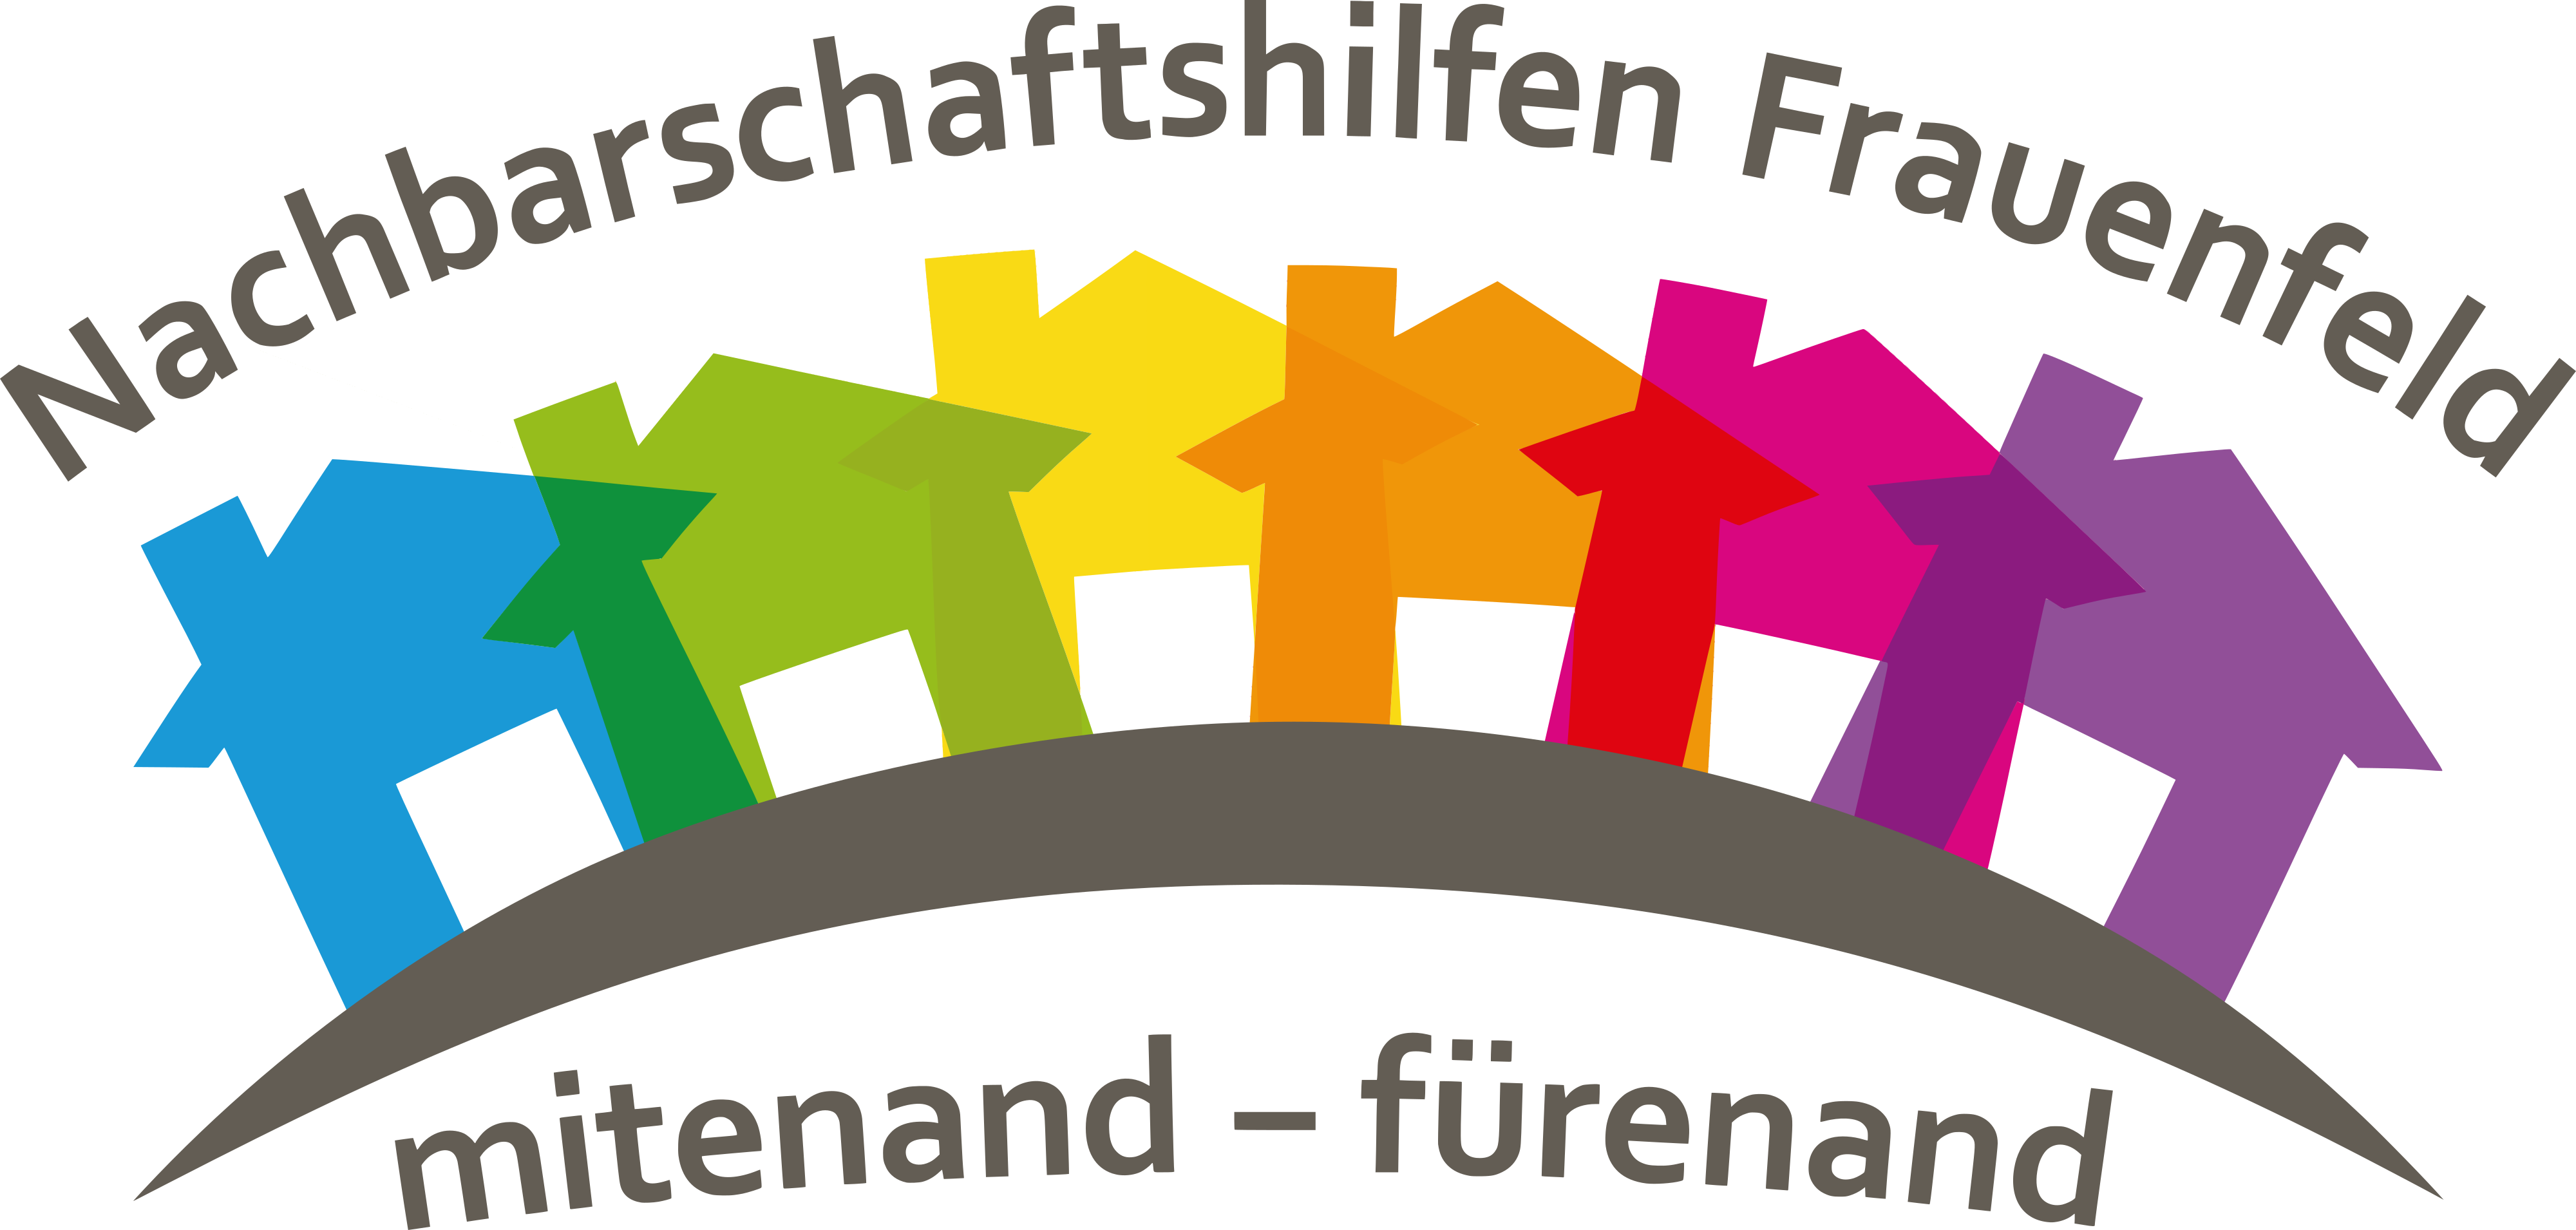 Logo der Nachbarschaftshilfen Frauenfeld (farbige Häuser) mit Leitspruch "mitenand - fürenand"